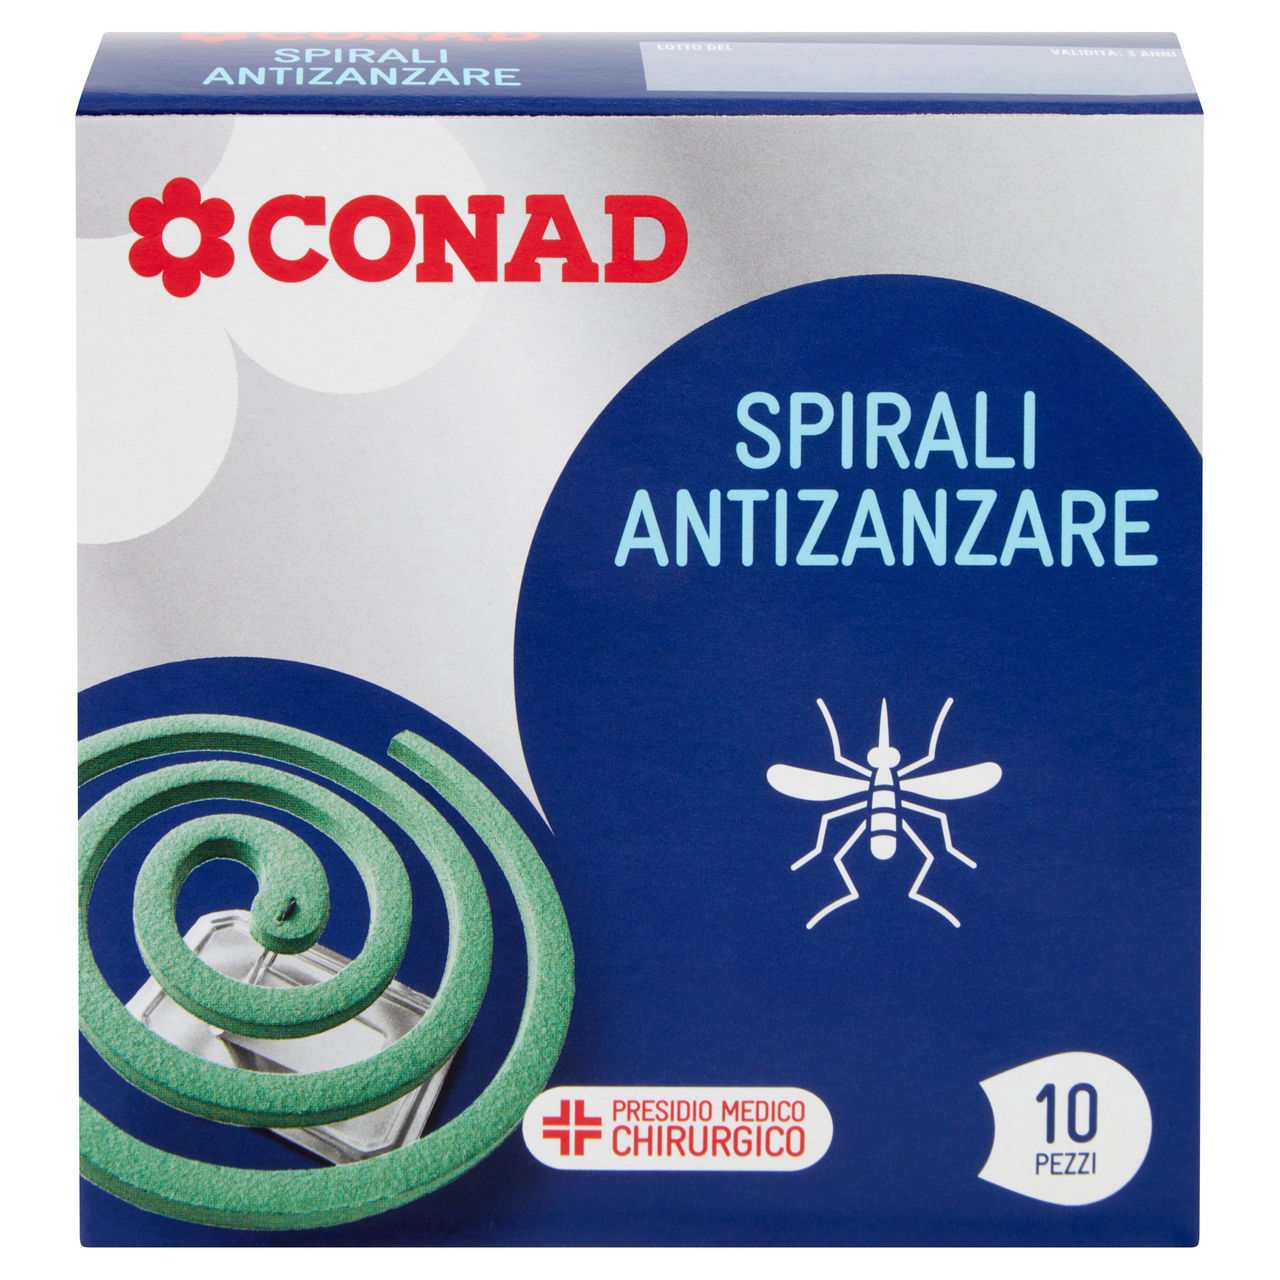 Spirali Antizanzare Conad in vendita online